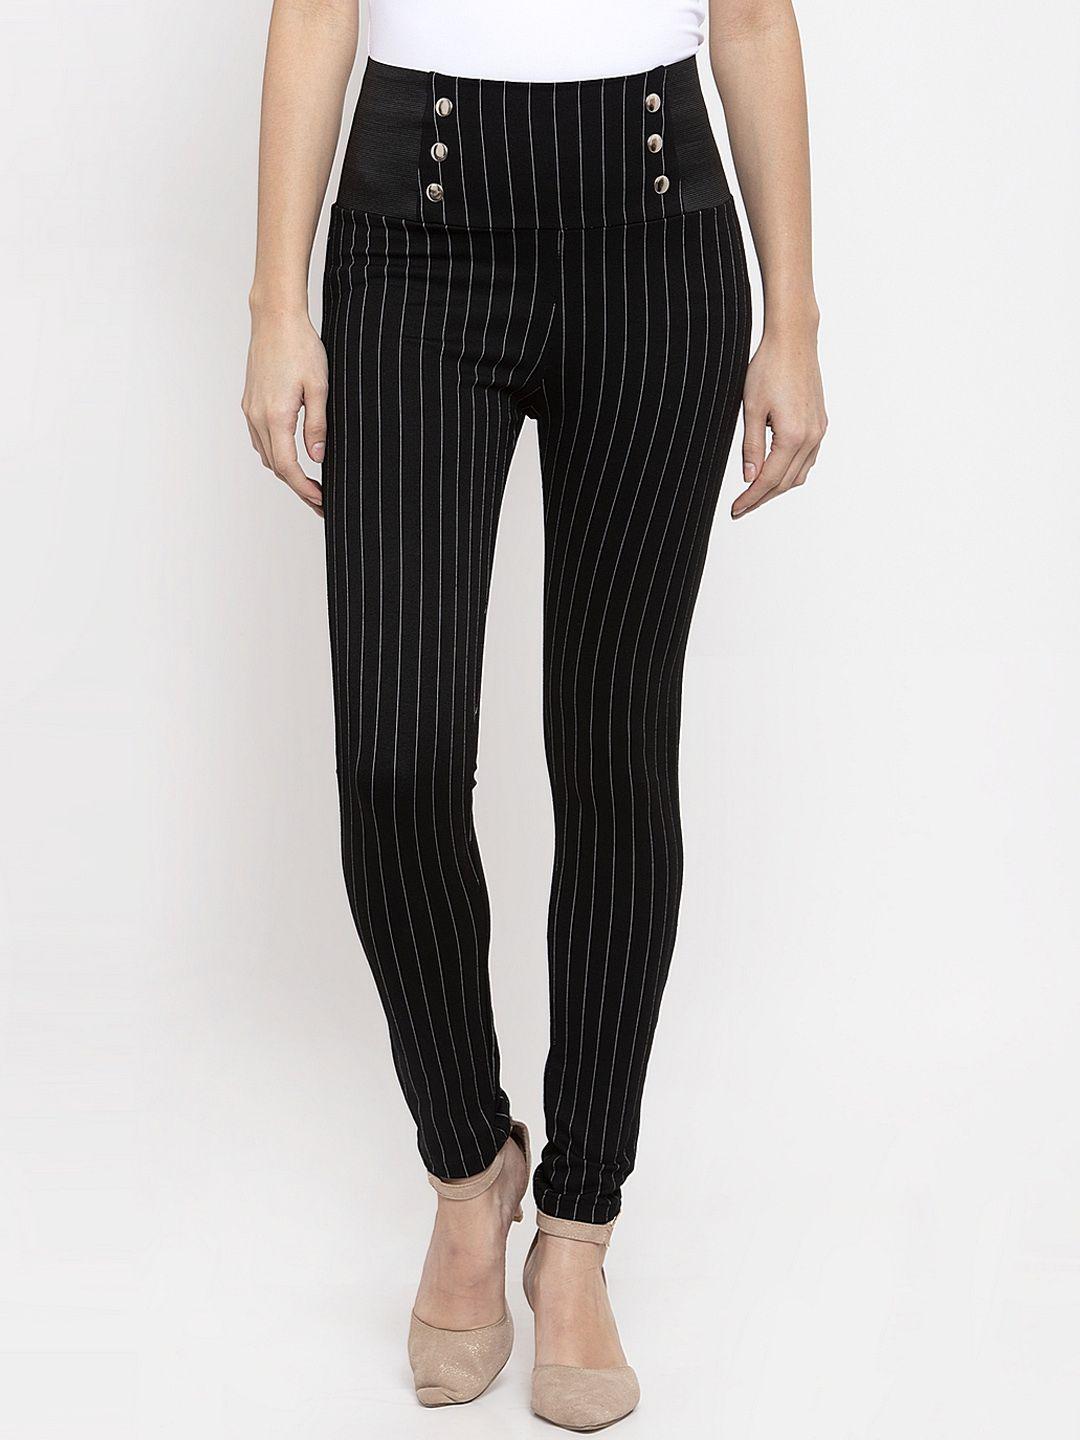 kassually women black & white striped slim-fit treggings